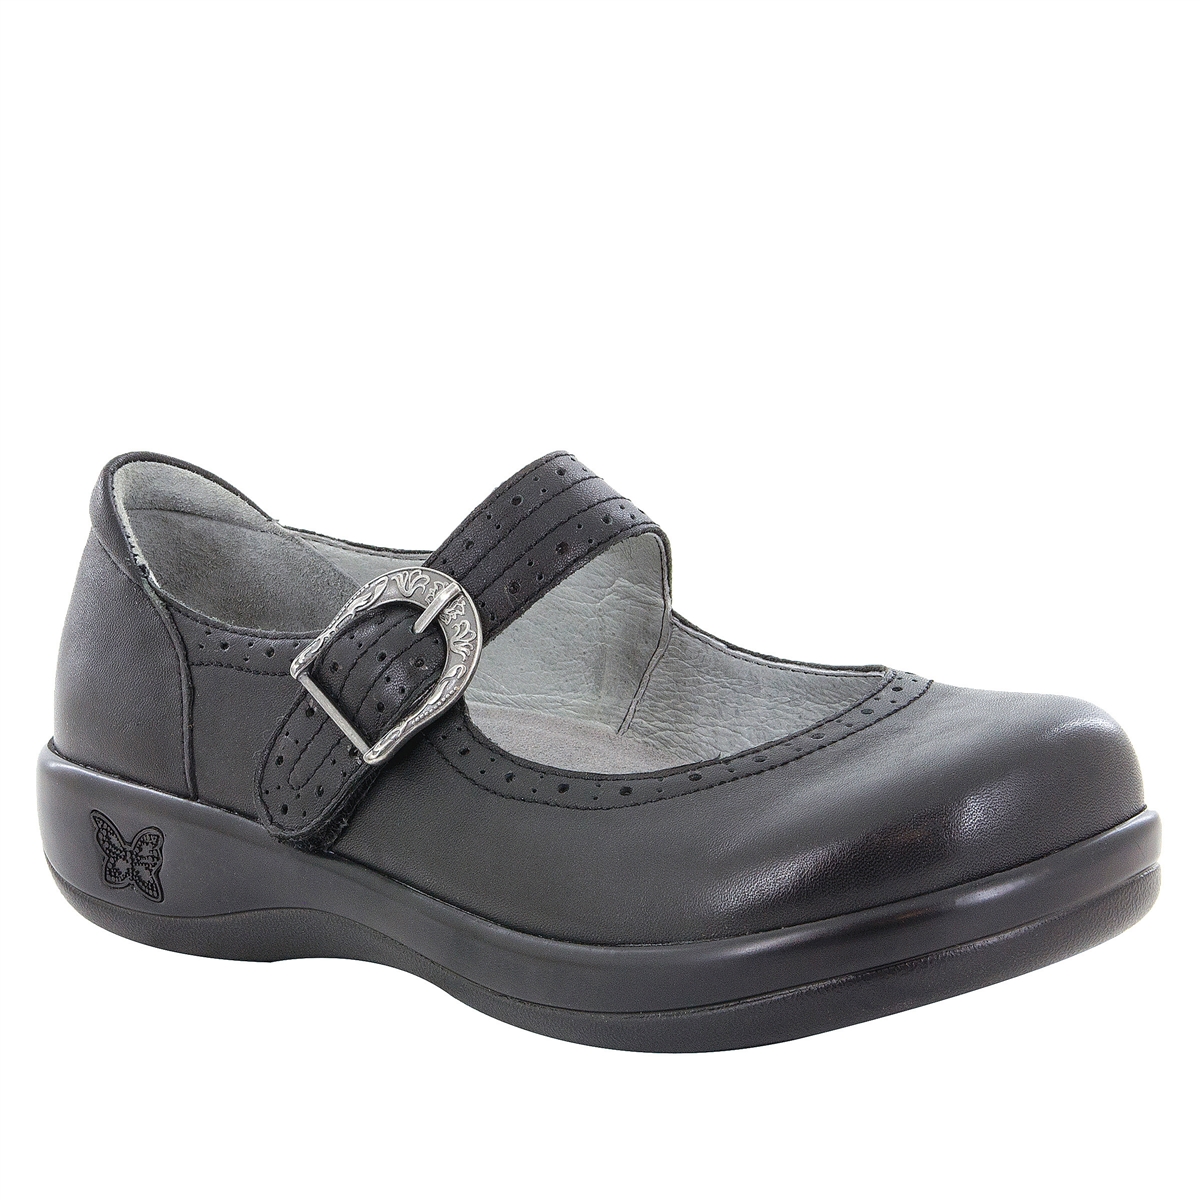 Alegria Alegria Shoes Womens 38 Kourtney Nappa Mary Jane Comfort KOU-601 Black Leather 